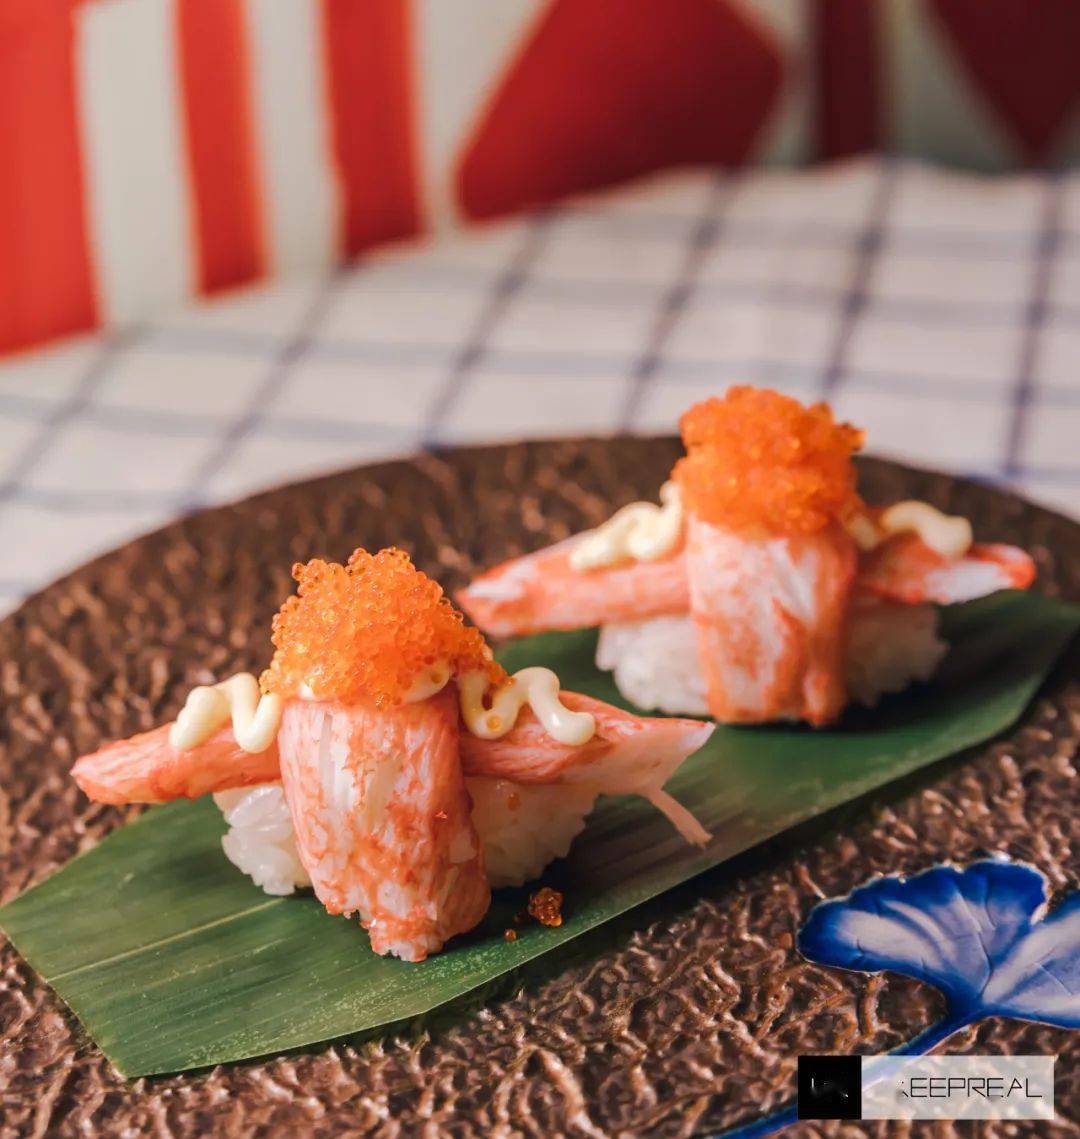 内含北海道蟹肉的一口爆珠寿司,蟹子在上面铺得满满当当,可见用料的